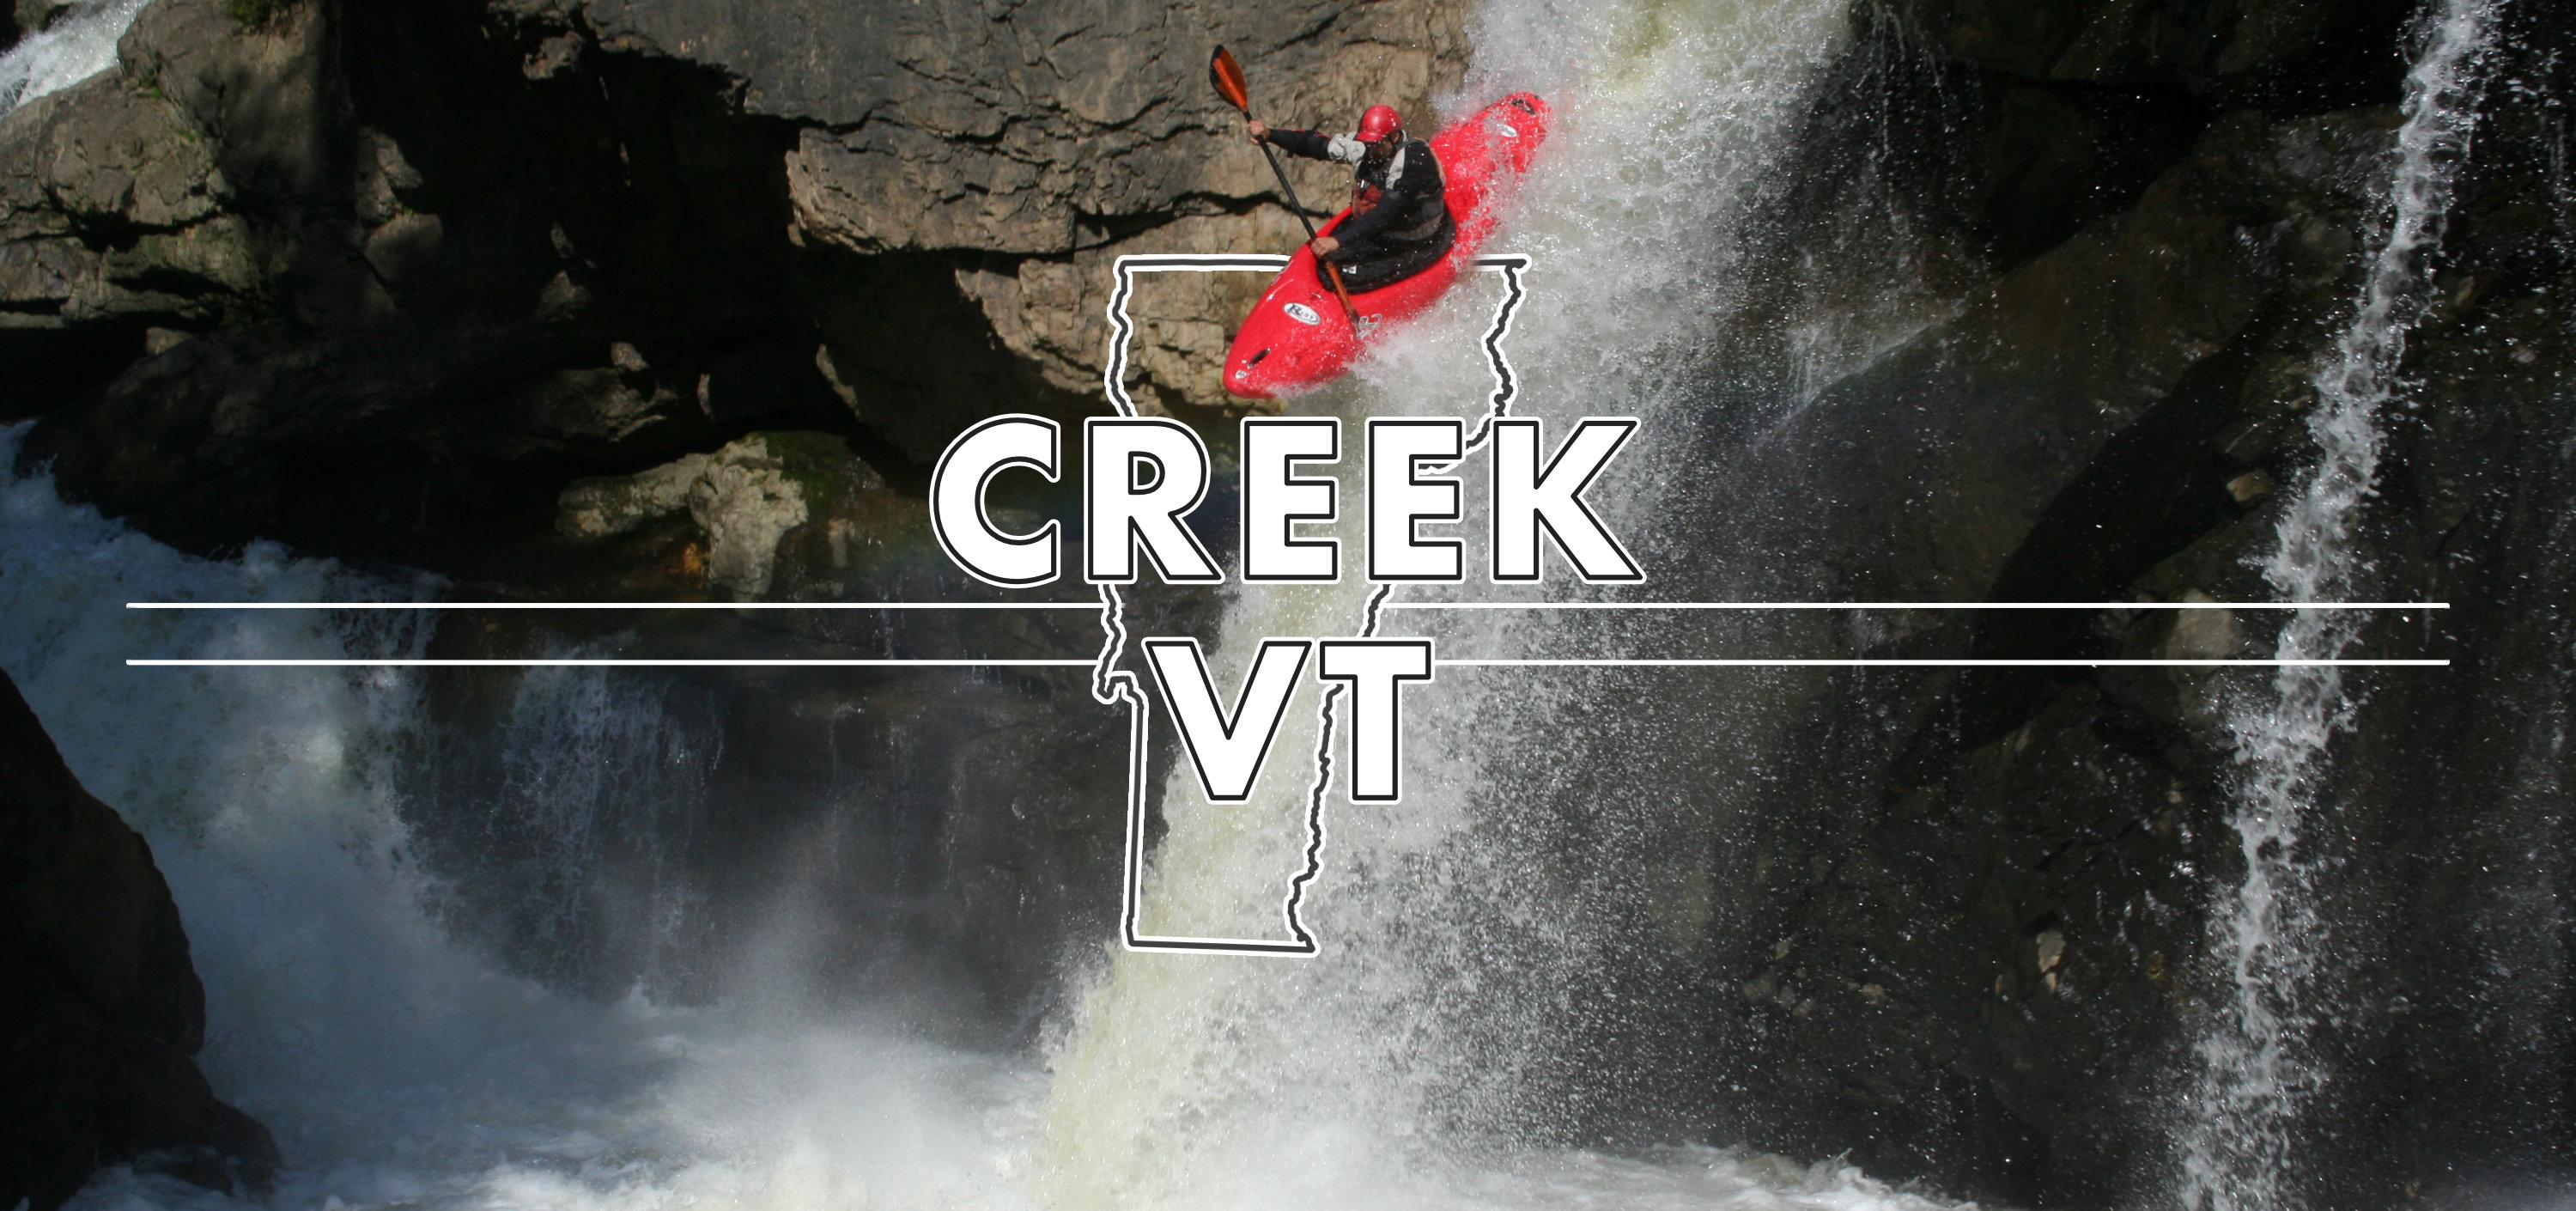 Creek VT Milton Falls Vermont Whitewater Kayaking